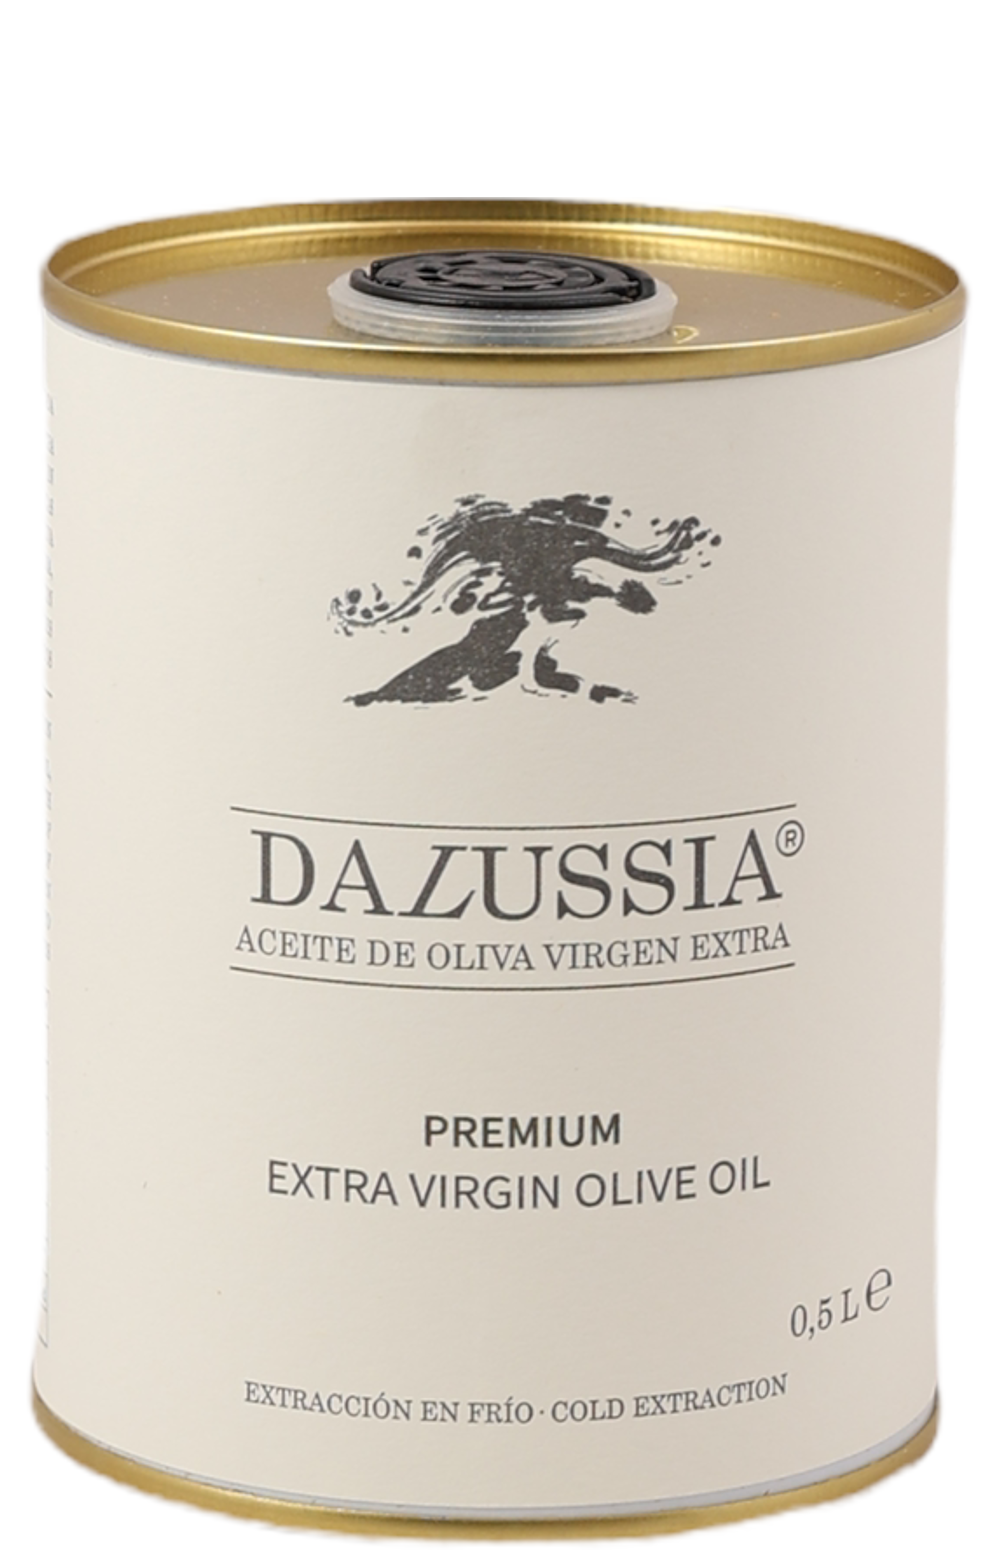 Dalussia Premium